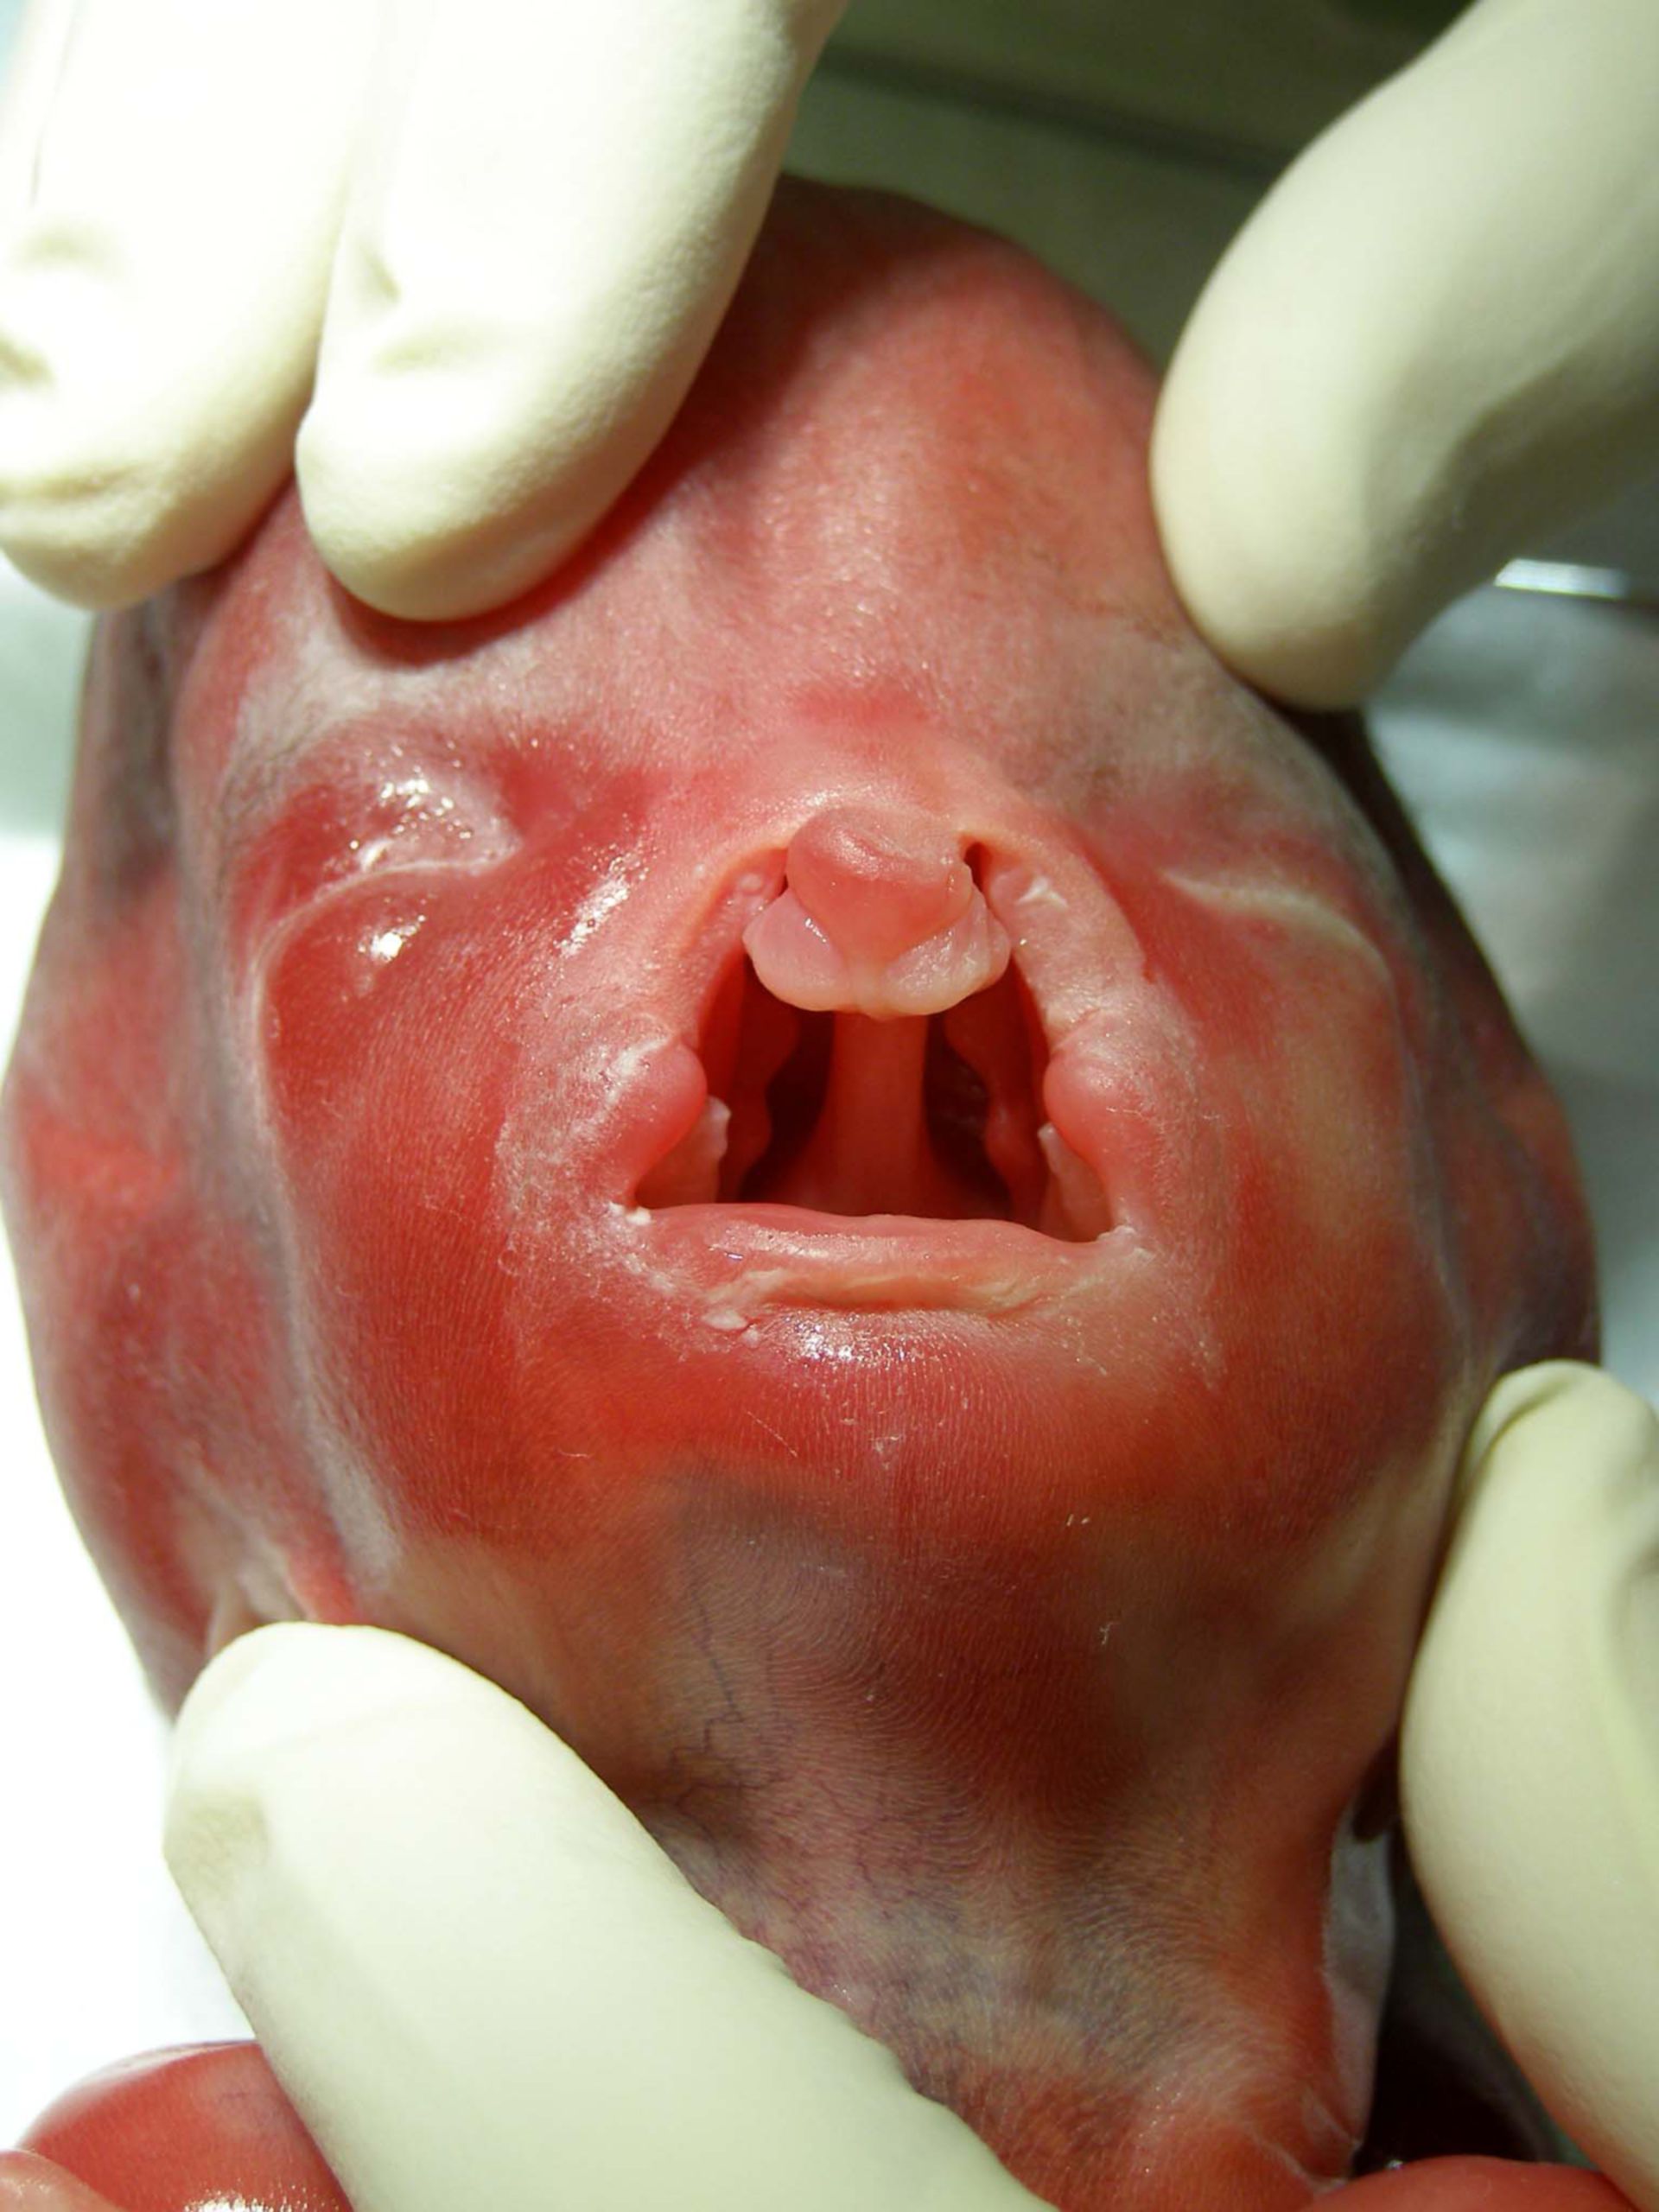 Fetal deformity